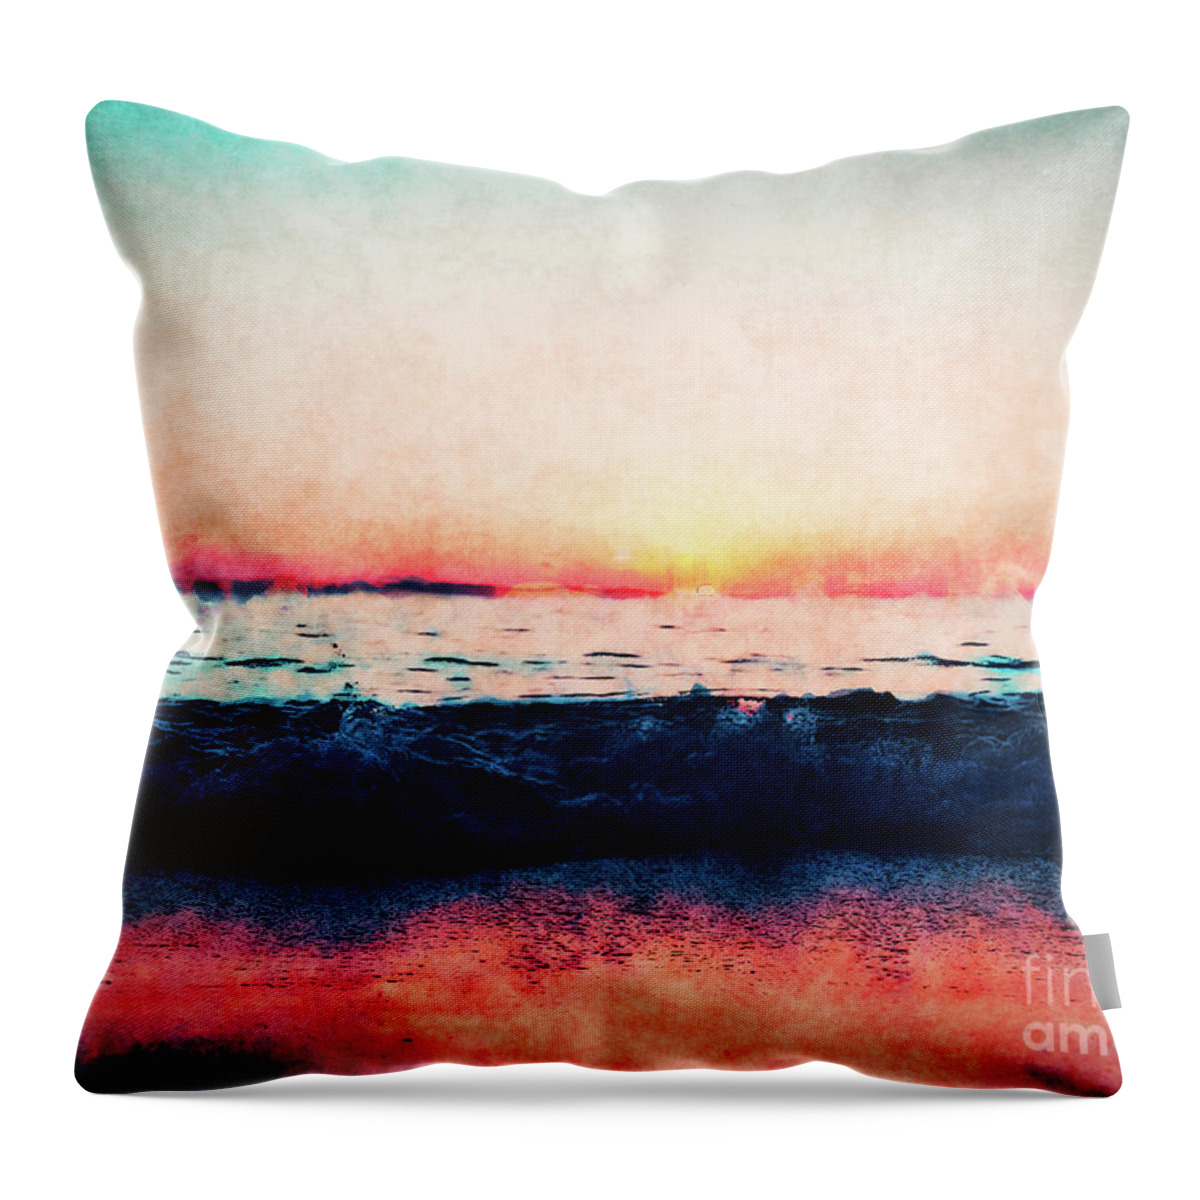 Ocean Throw Pillow featuring the digital art Ocean Sunset #1 by Phil Perkins